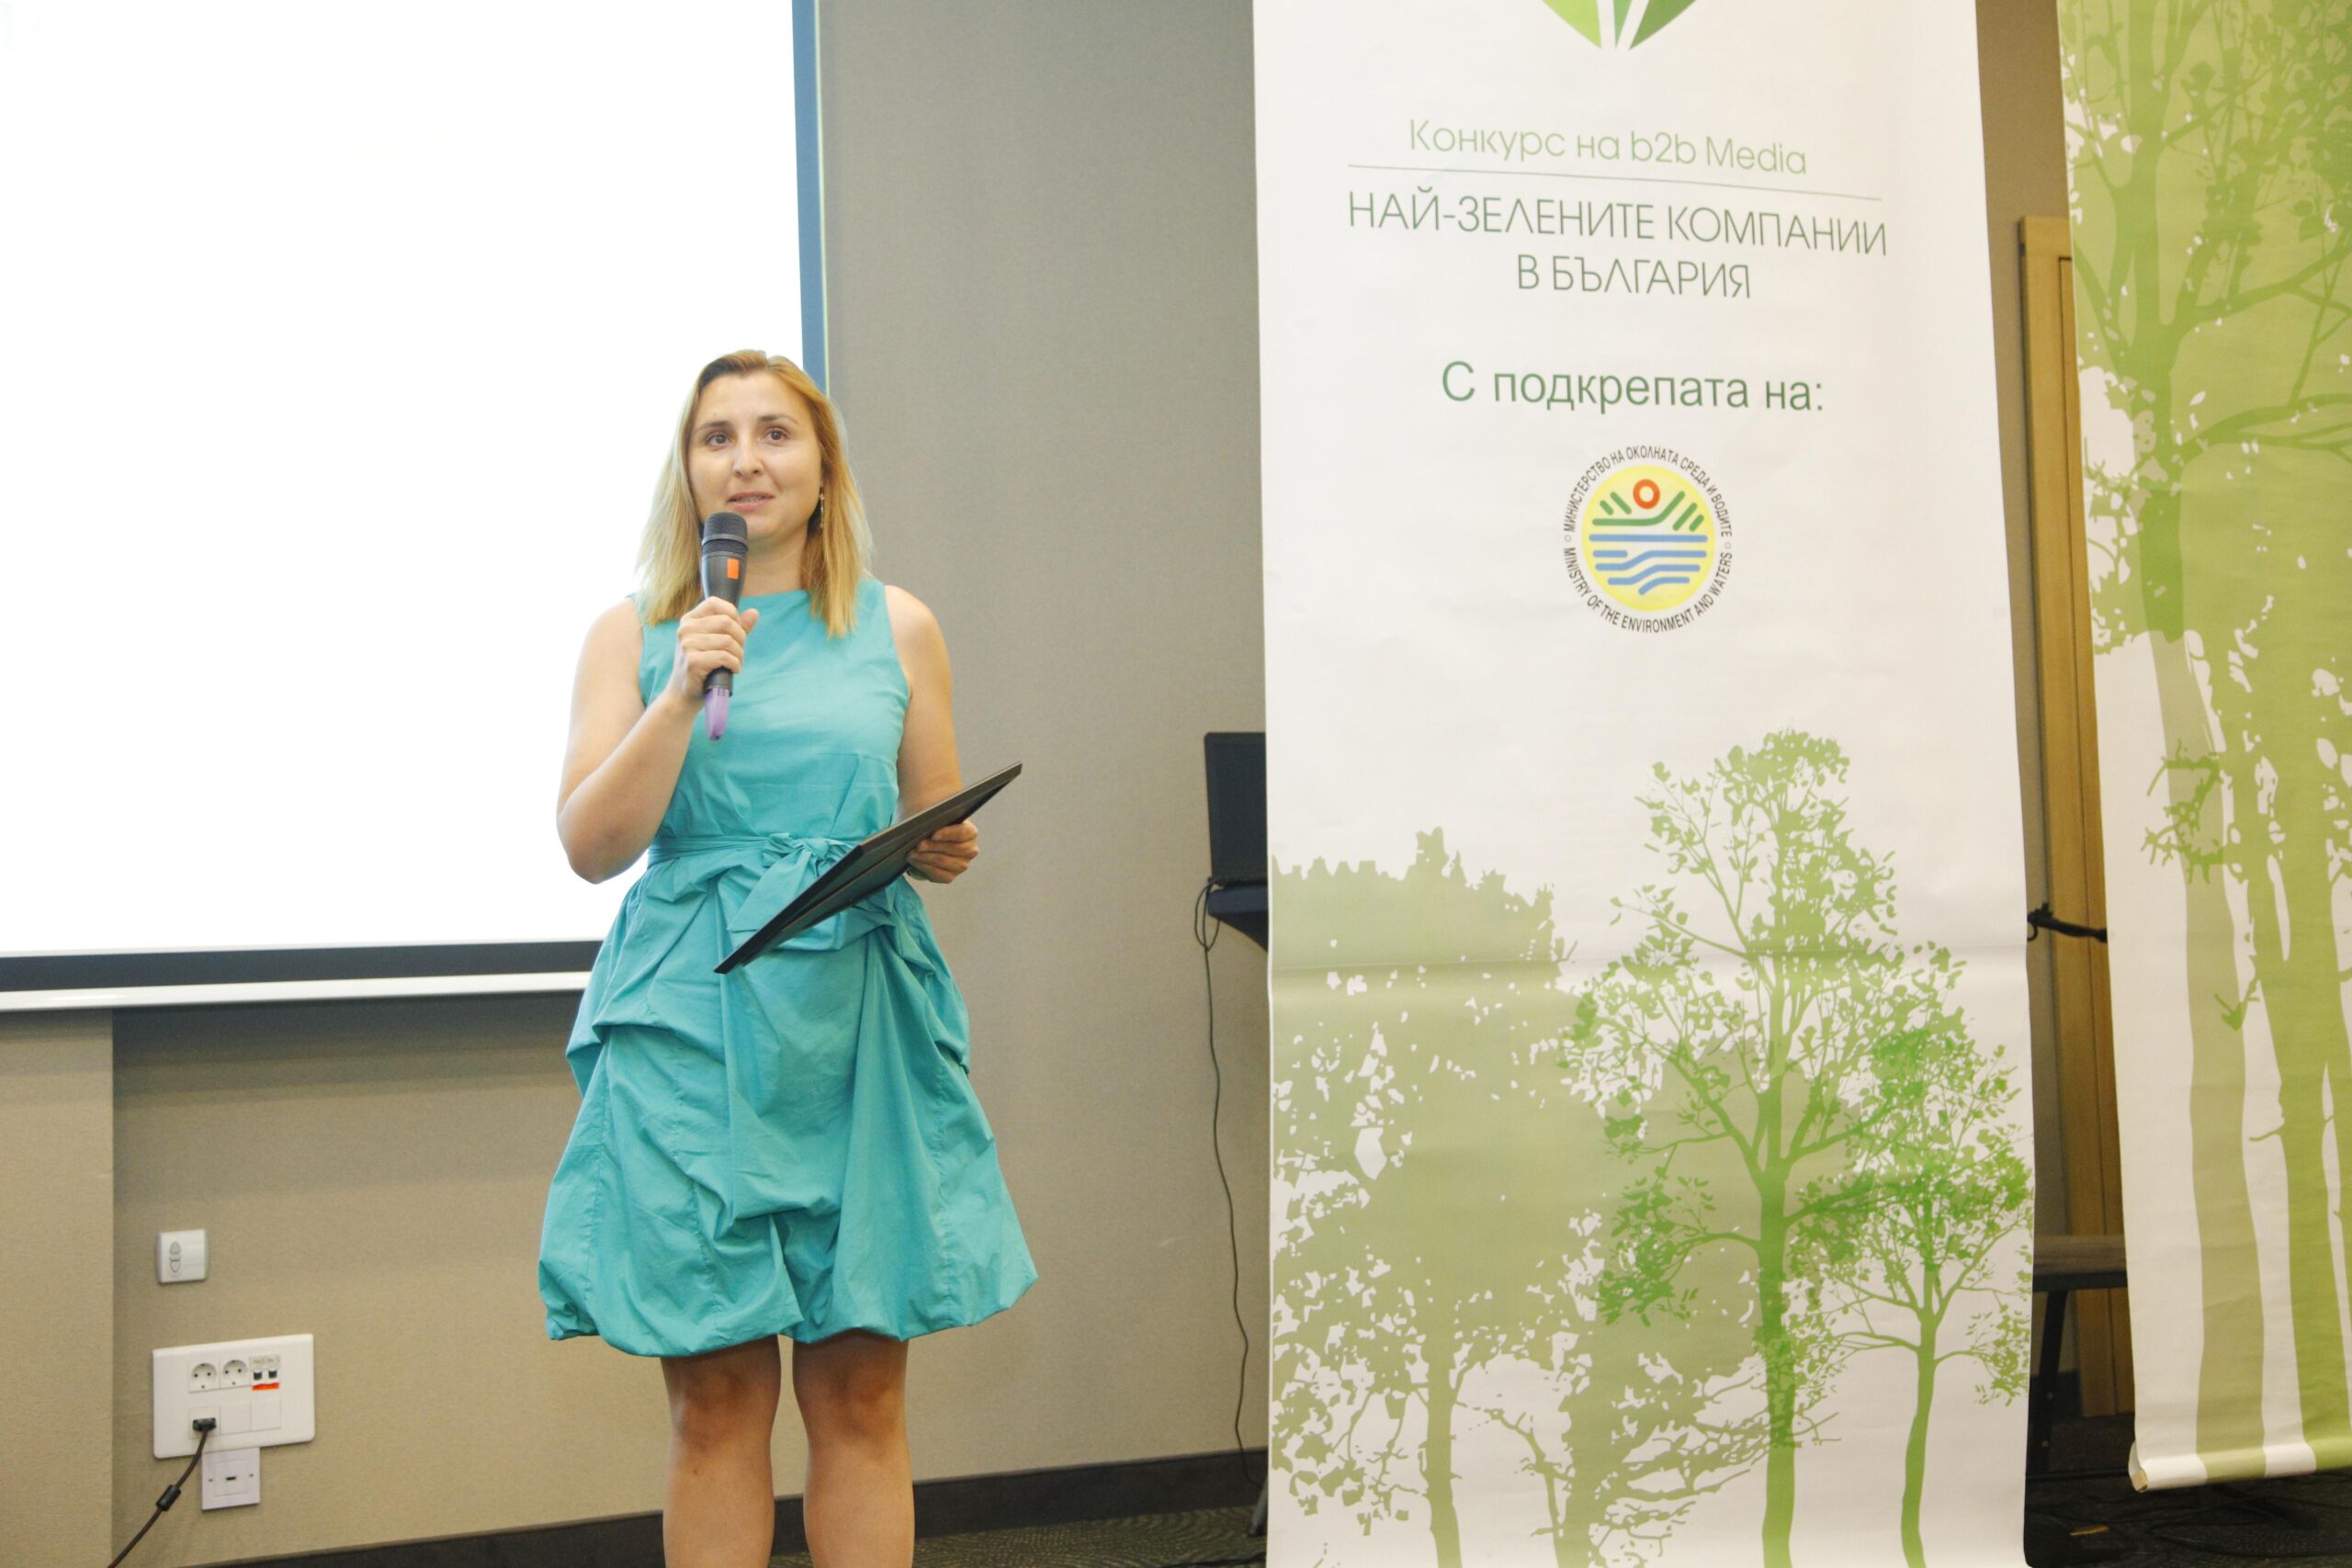 ВИТТЕ Аутомотив България печели Най-зелена компания в България